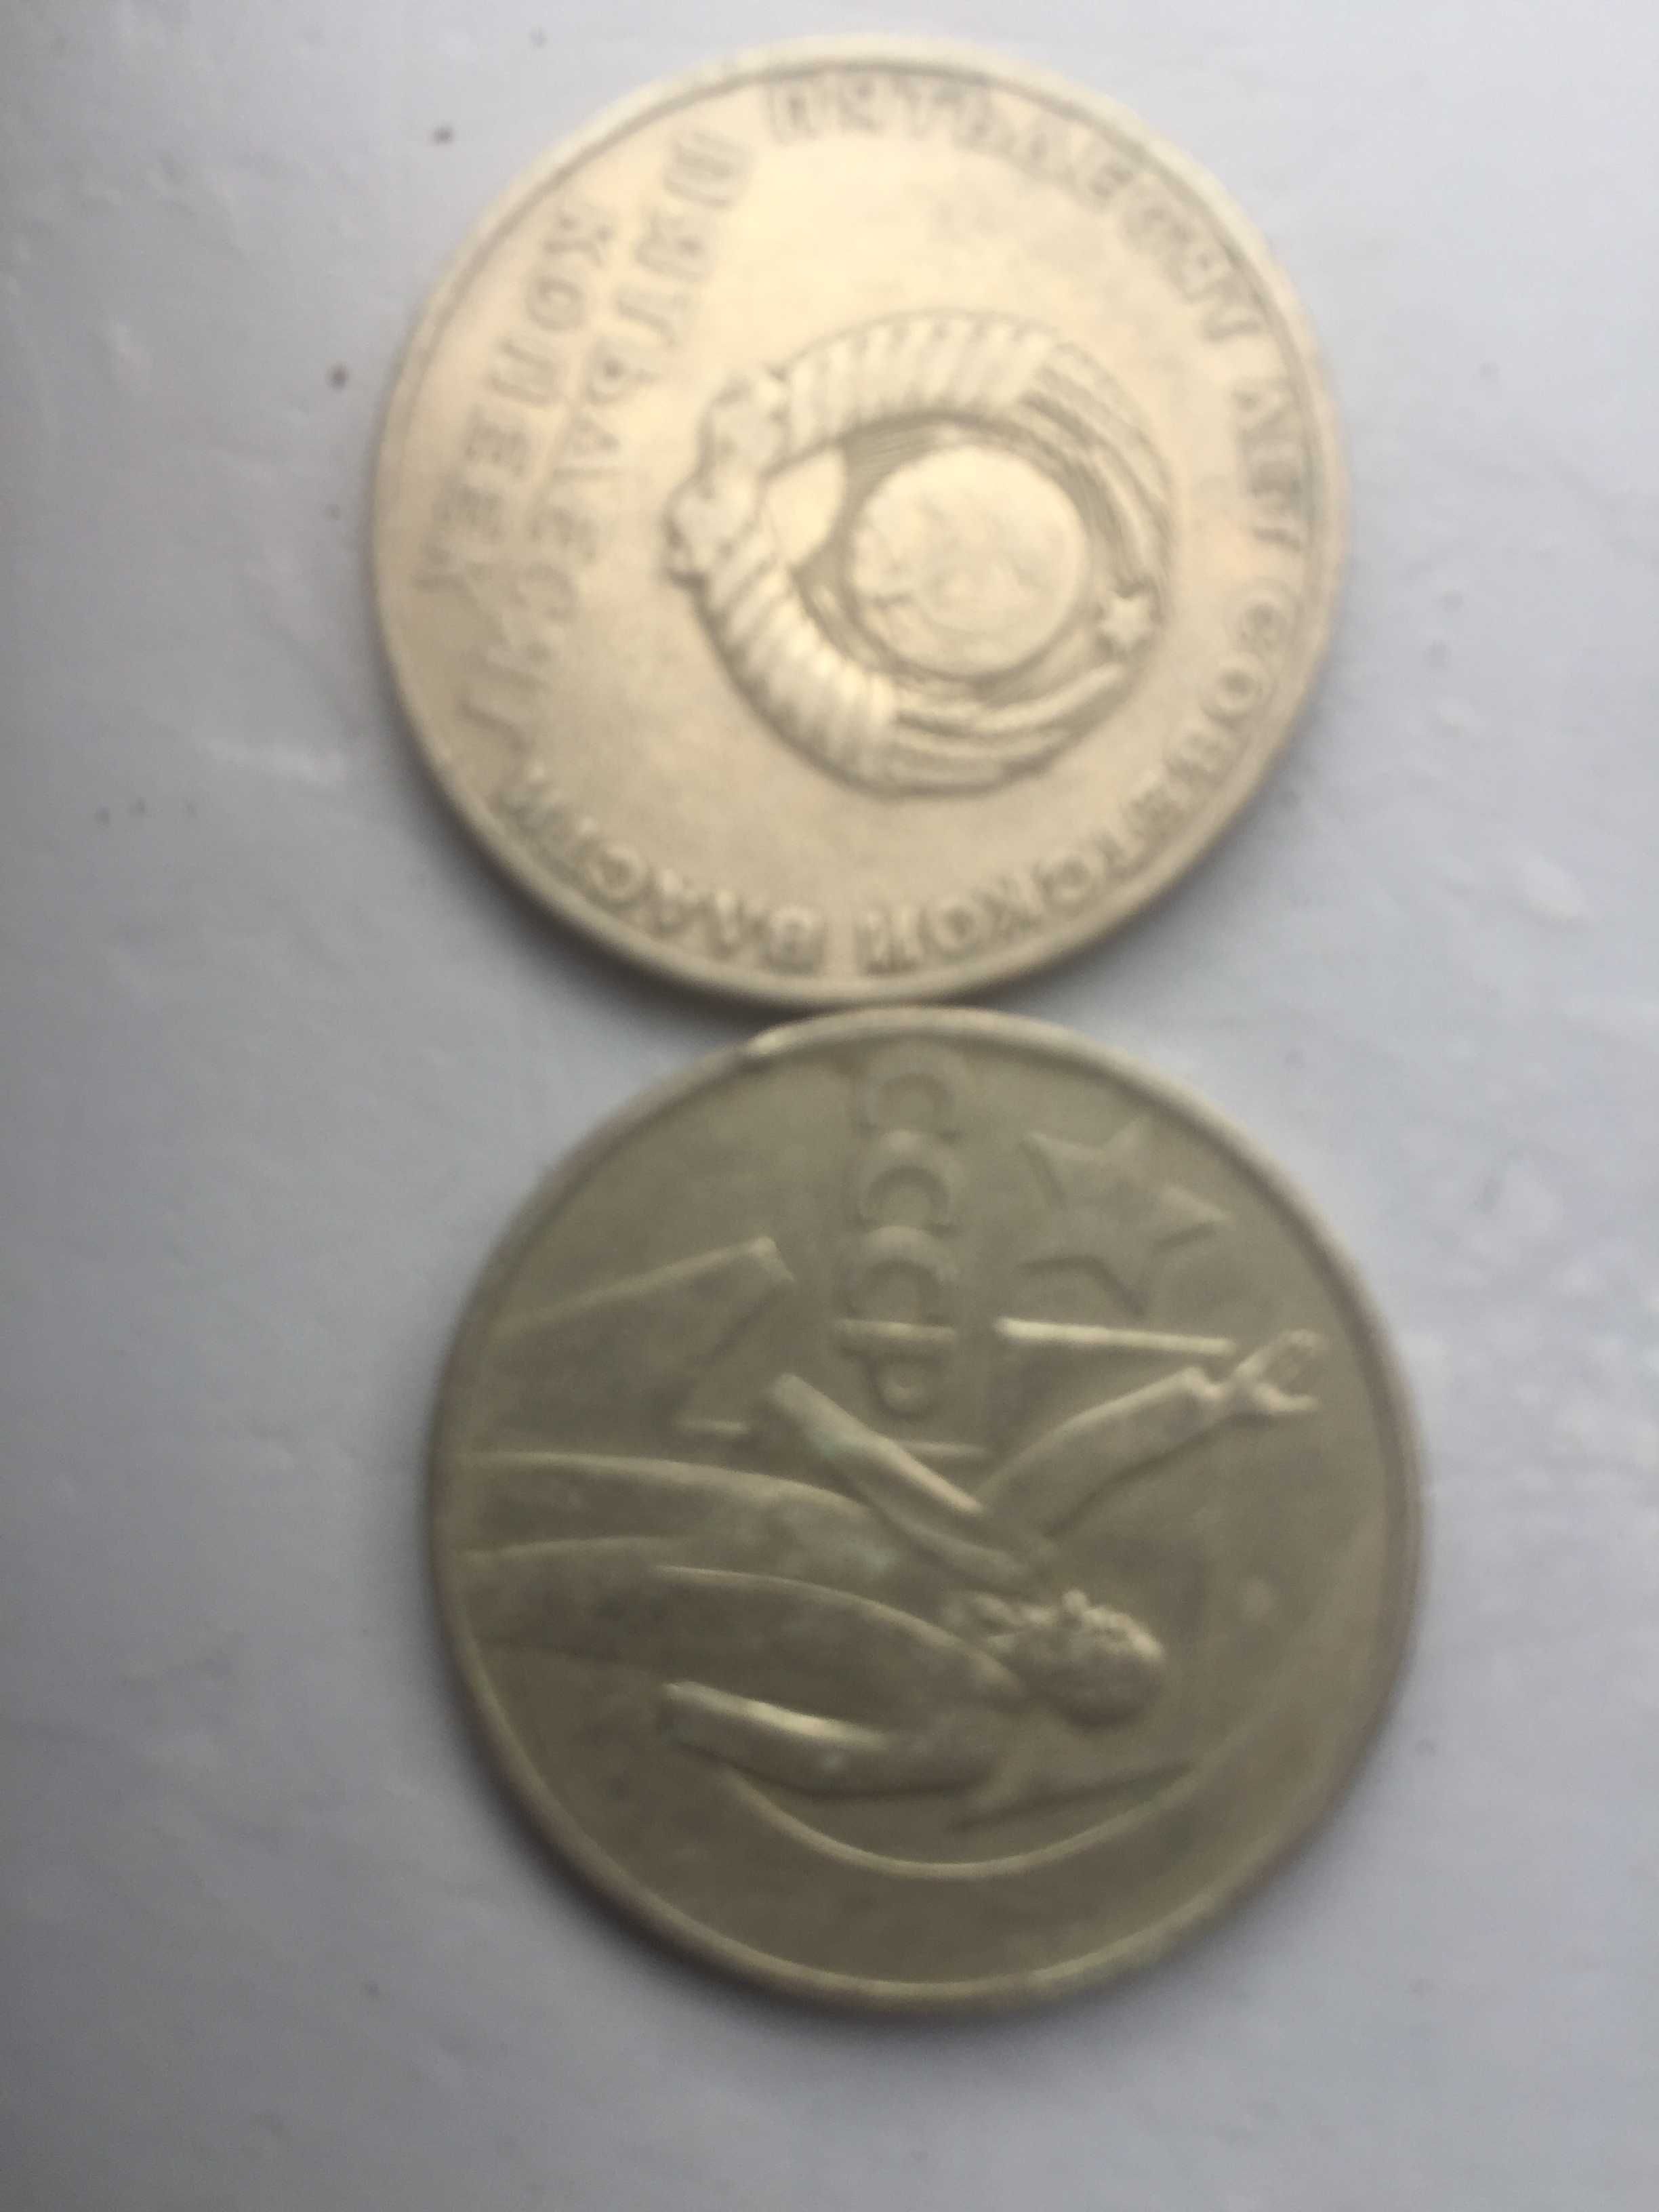 металеві монети вартістю 1руб. бувшого СРСР